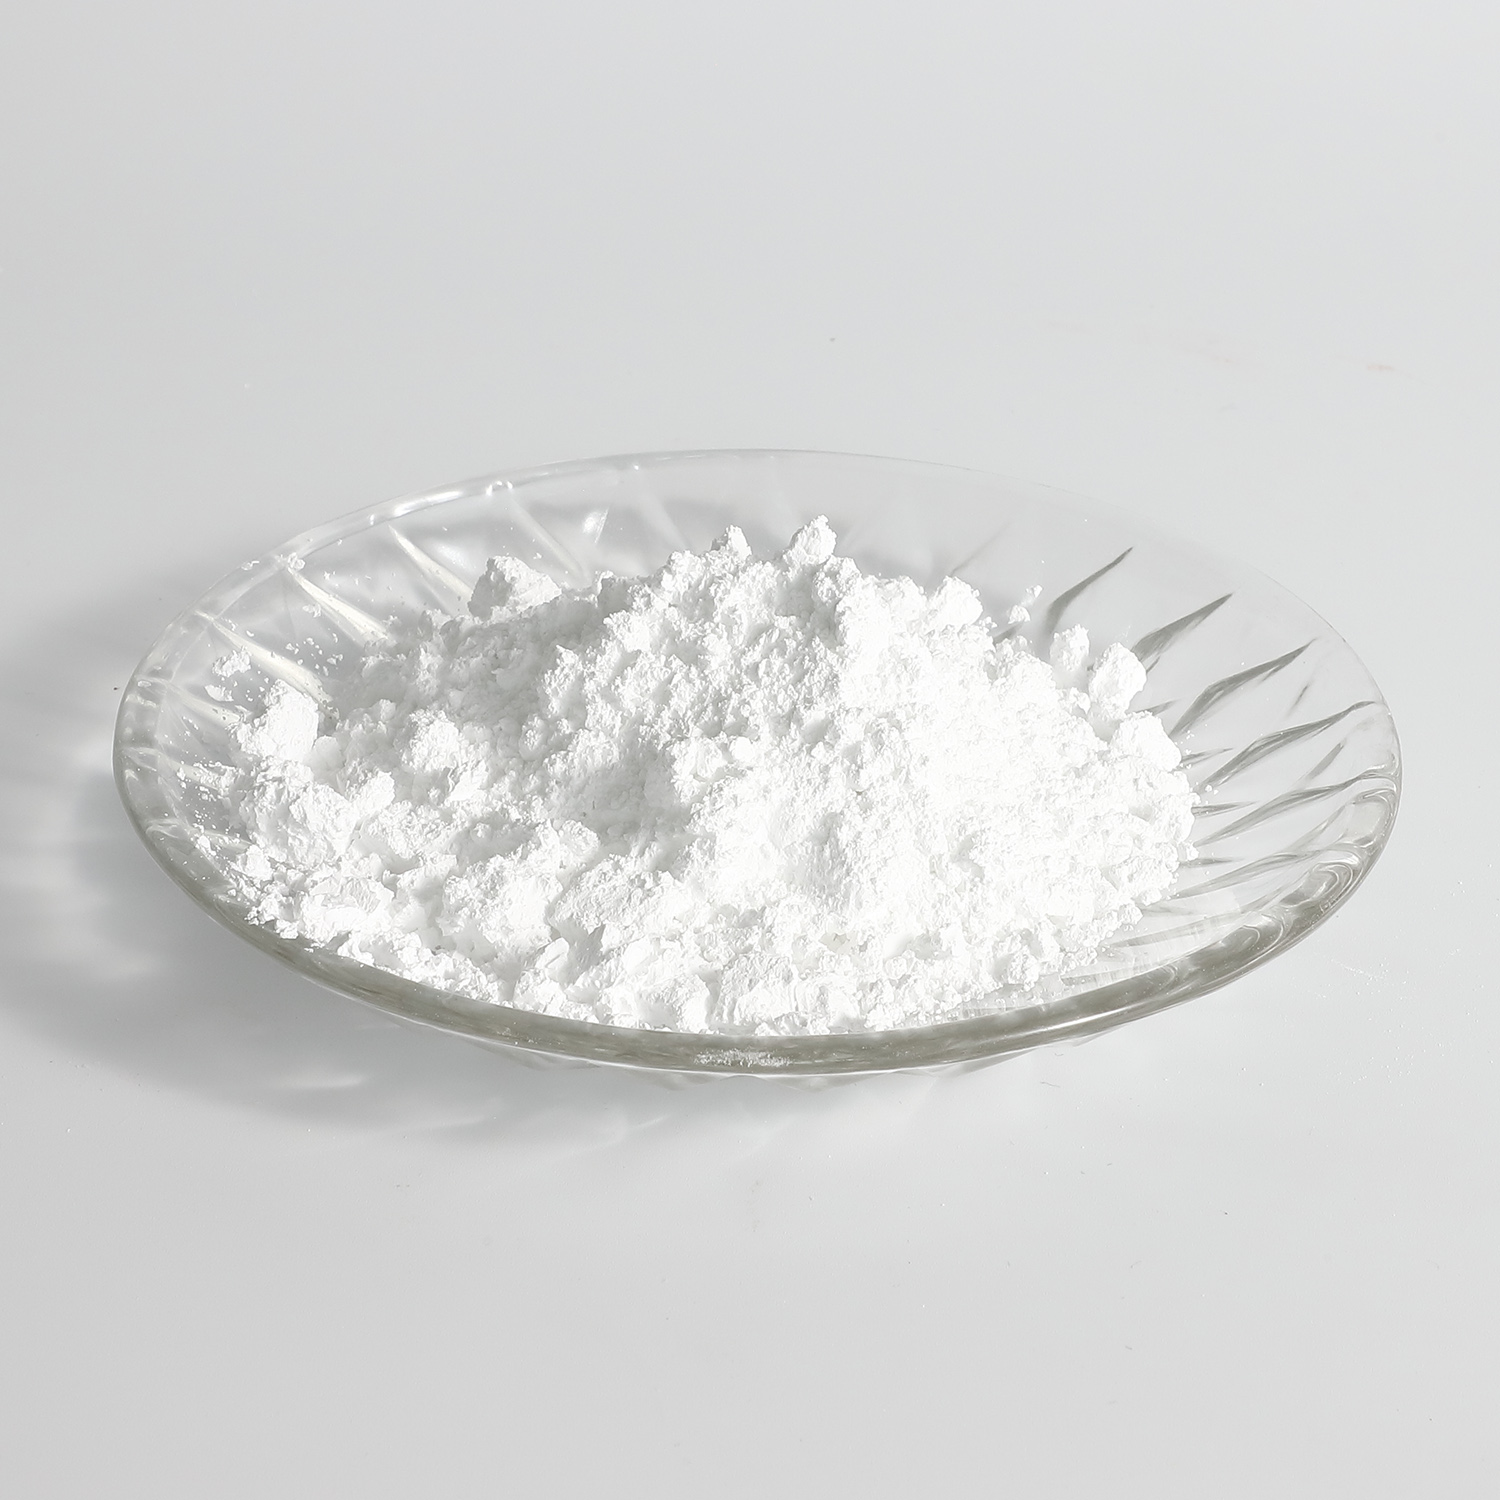 苯佐卡因 / 对氨基苯甲酸乙酯,benzocaine